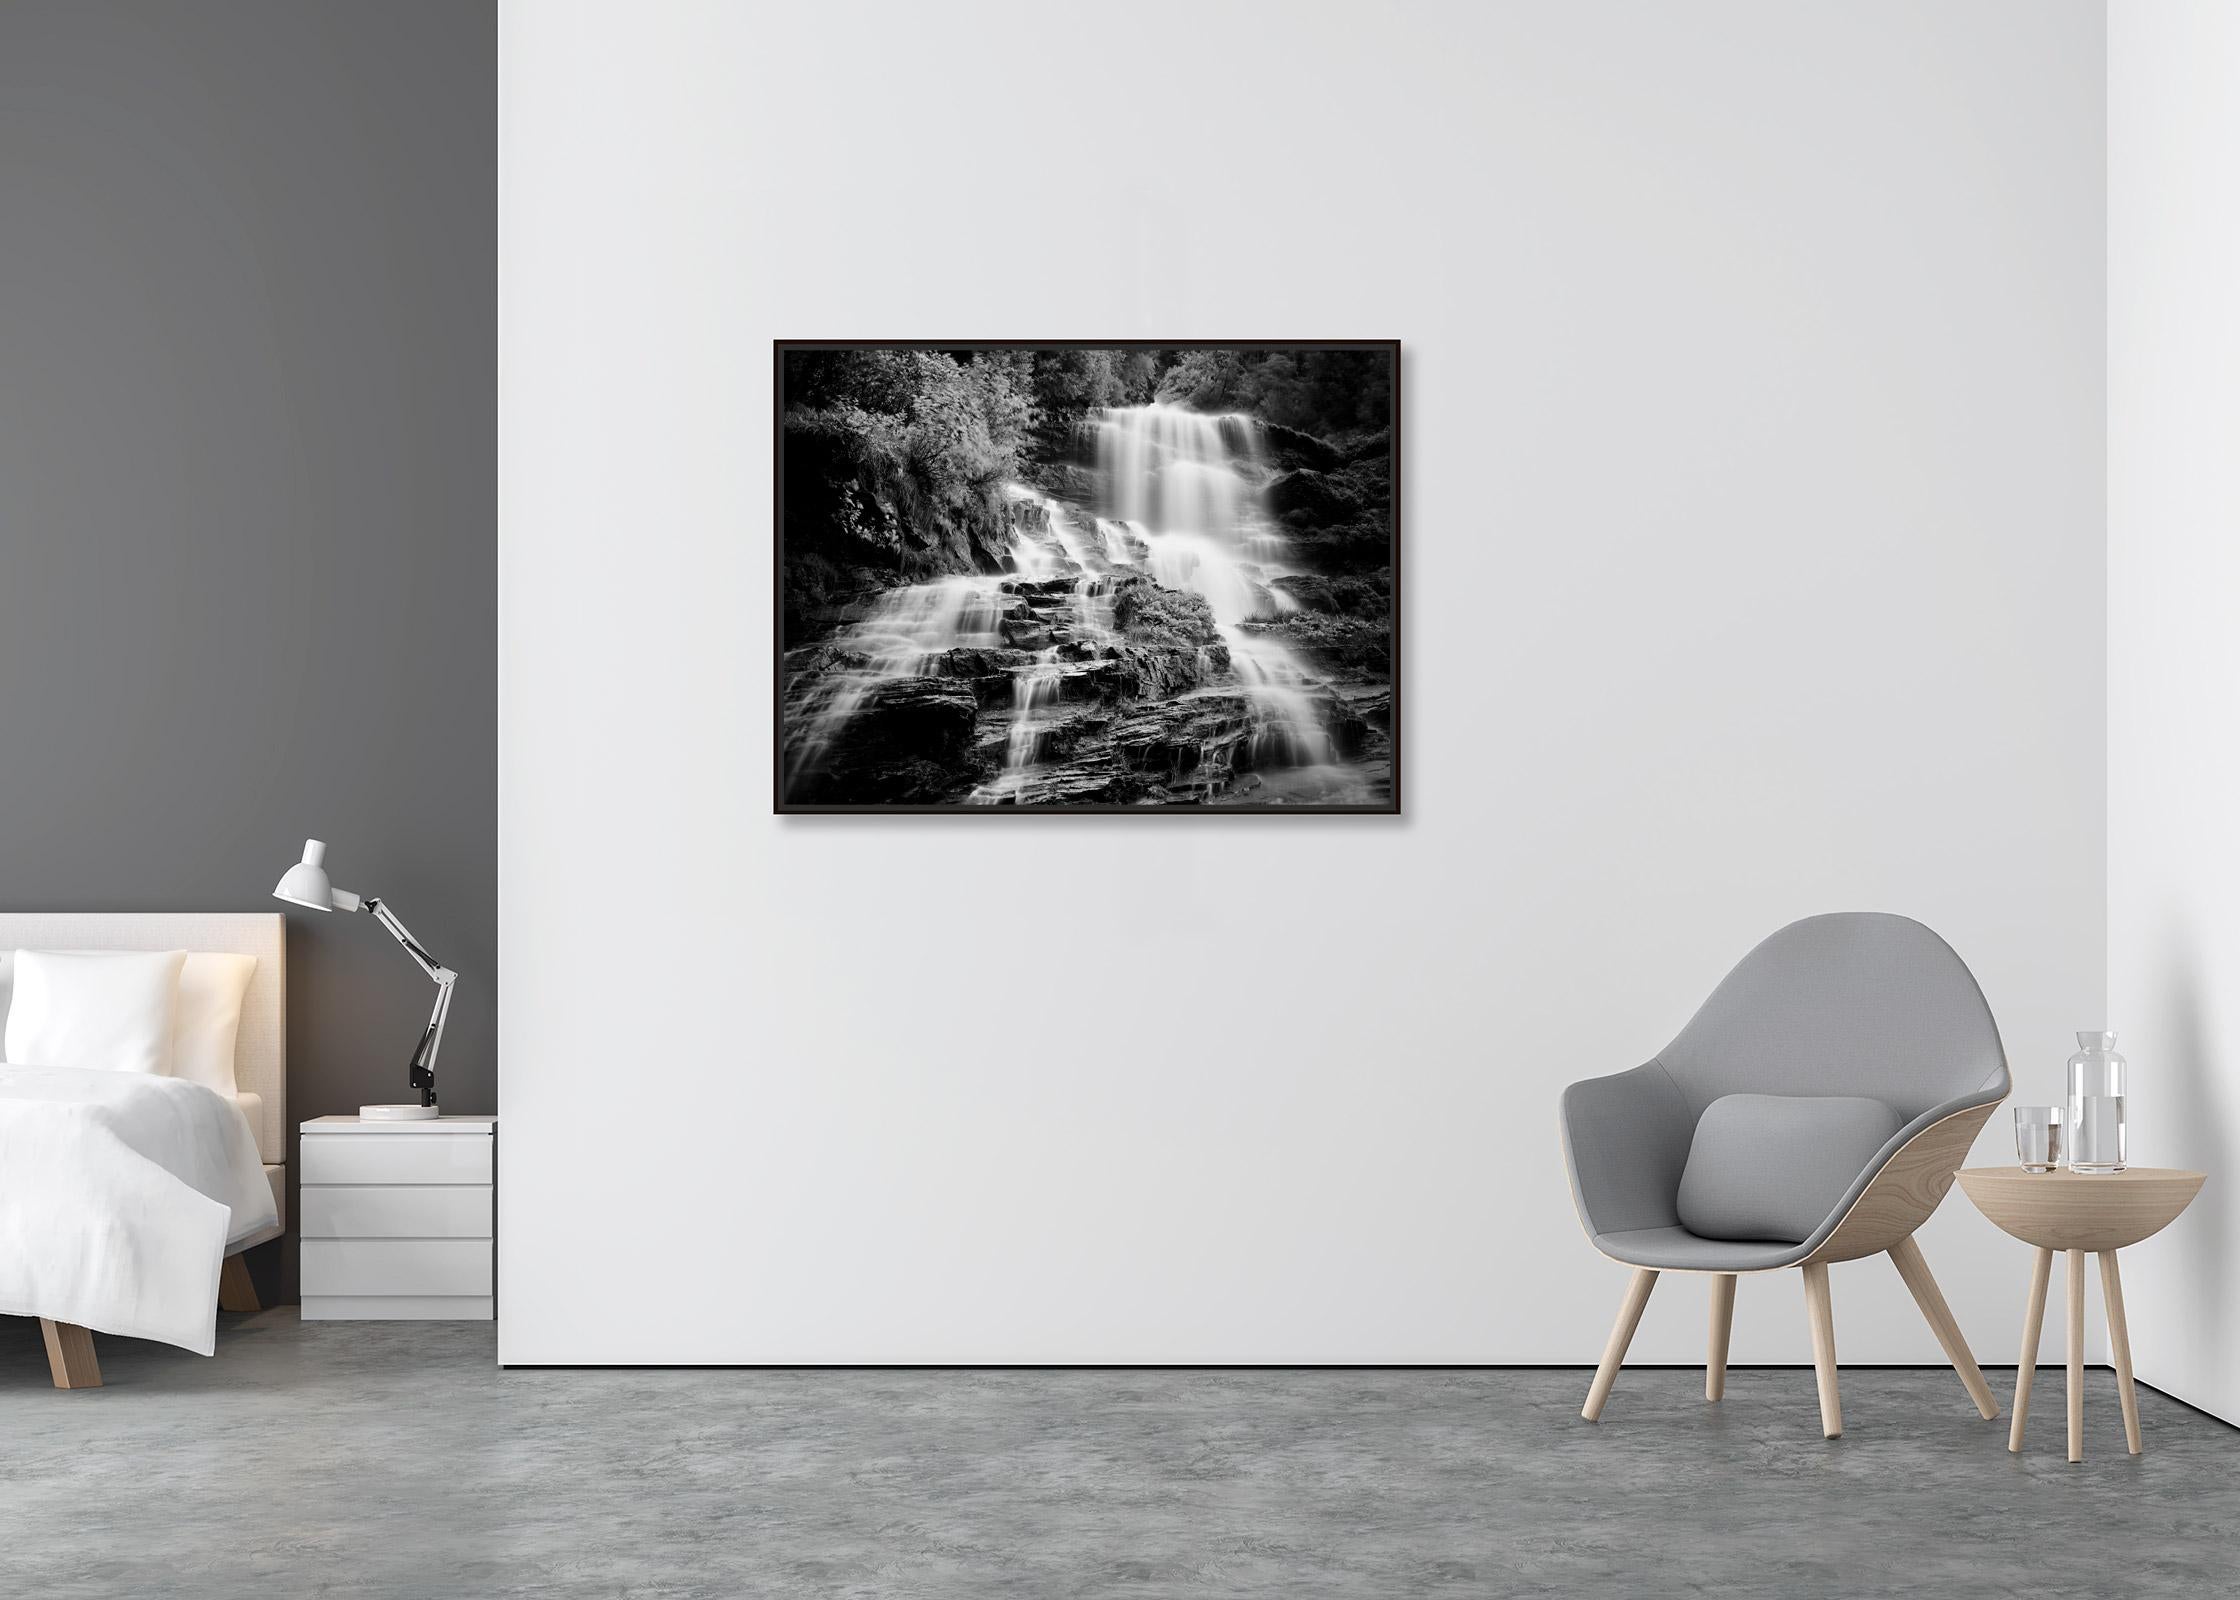 Klockelefall, Wasserfall, Gebirgsbach, Schwarz-Weiß-Fotografie, Landschaft (Zeitgenössisch), Photograph, von Gerald Berghammer